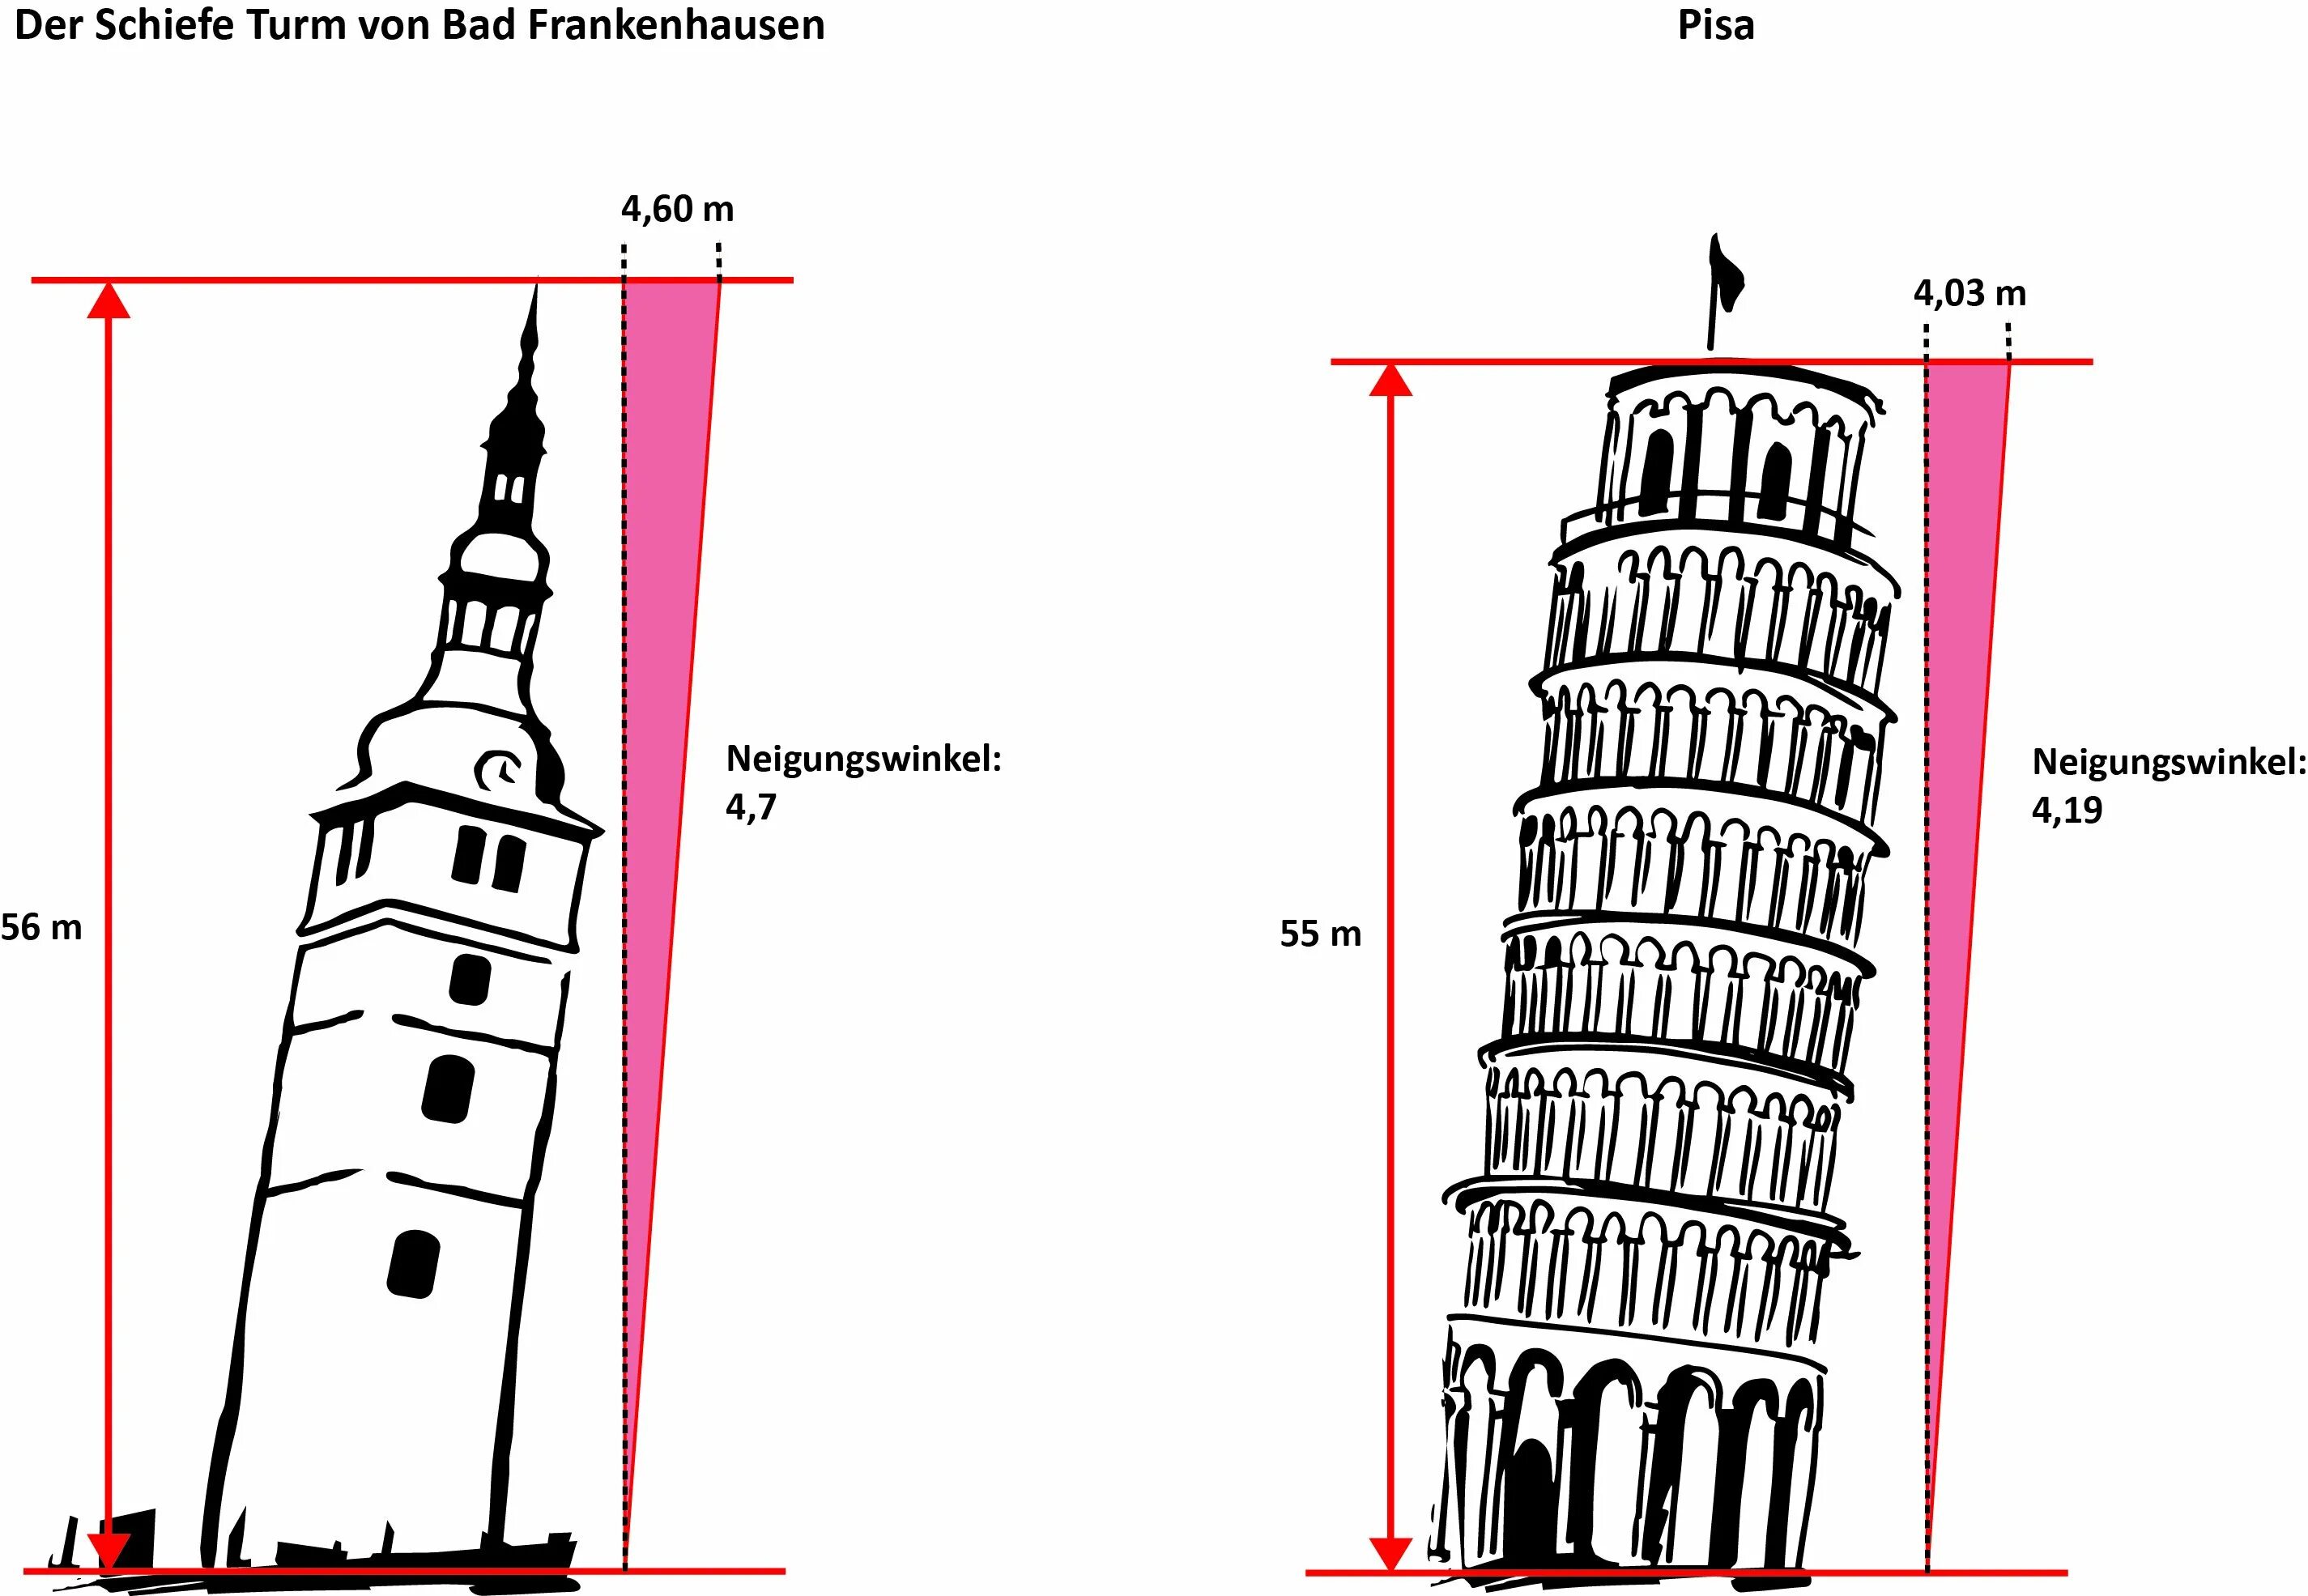 Невьянская башня чертеж. Угол наклона Пизанской башни. Отклонение Пизанской башни в градусах. Угол наклона Пизанской башни в градусах.